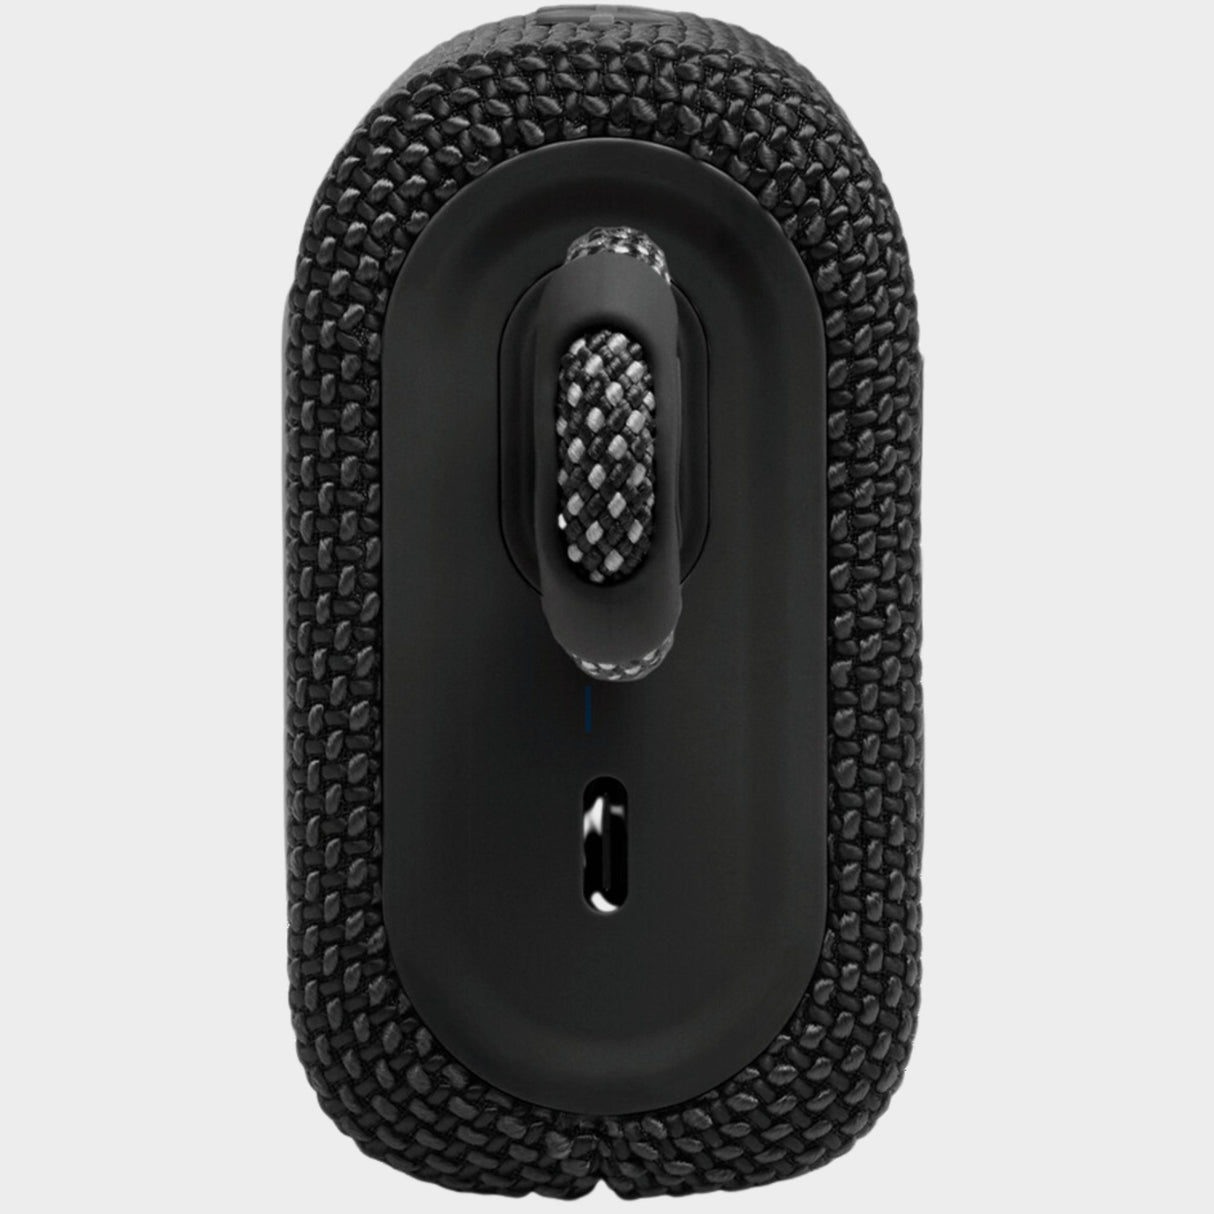 JBL Go 3, Waterproof Wireless Ultra Portable Speaker – Black - KWT Tech Mart